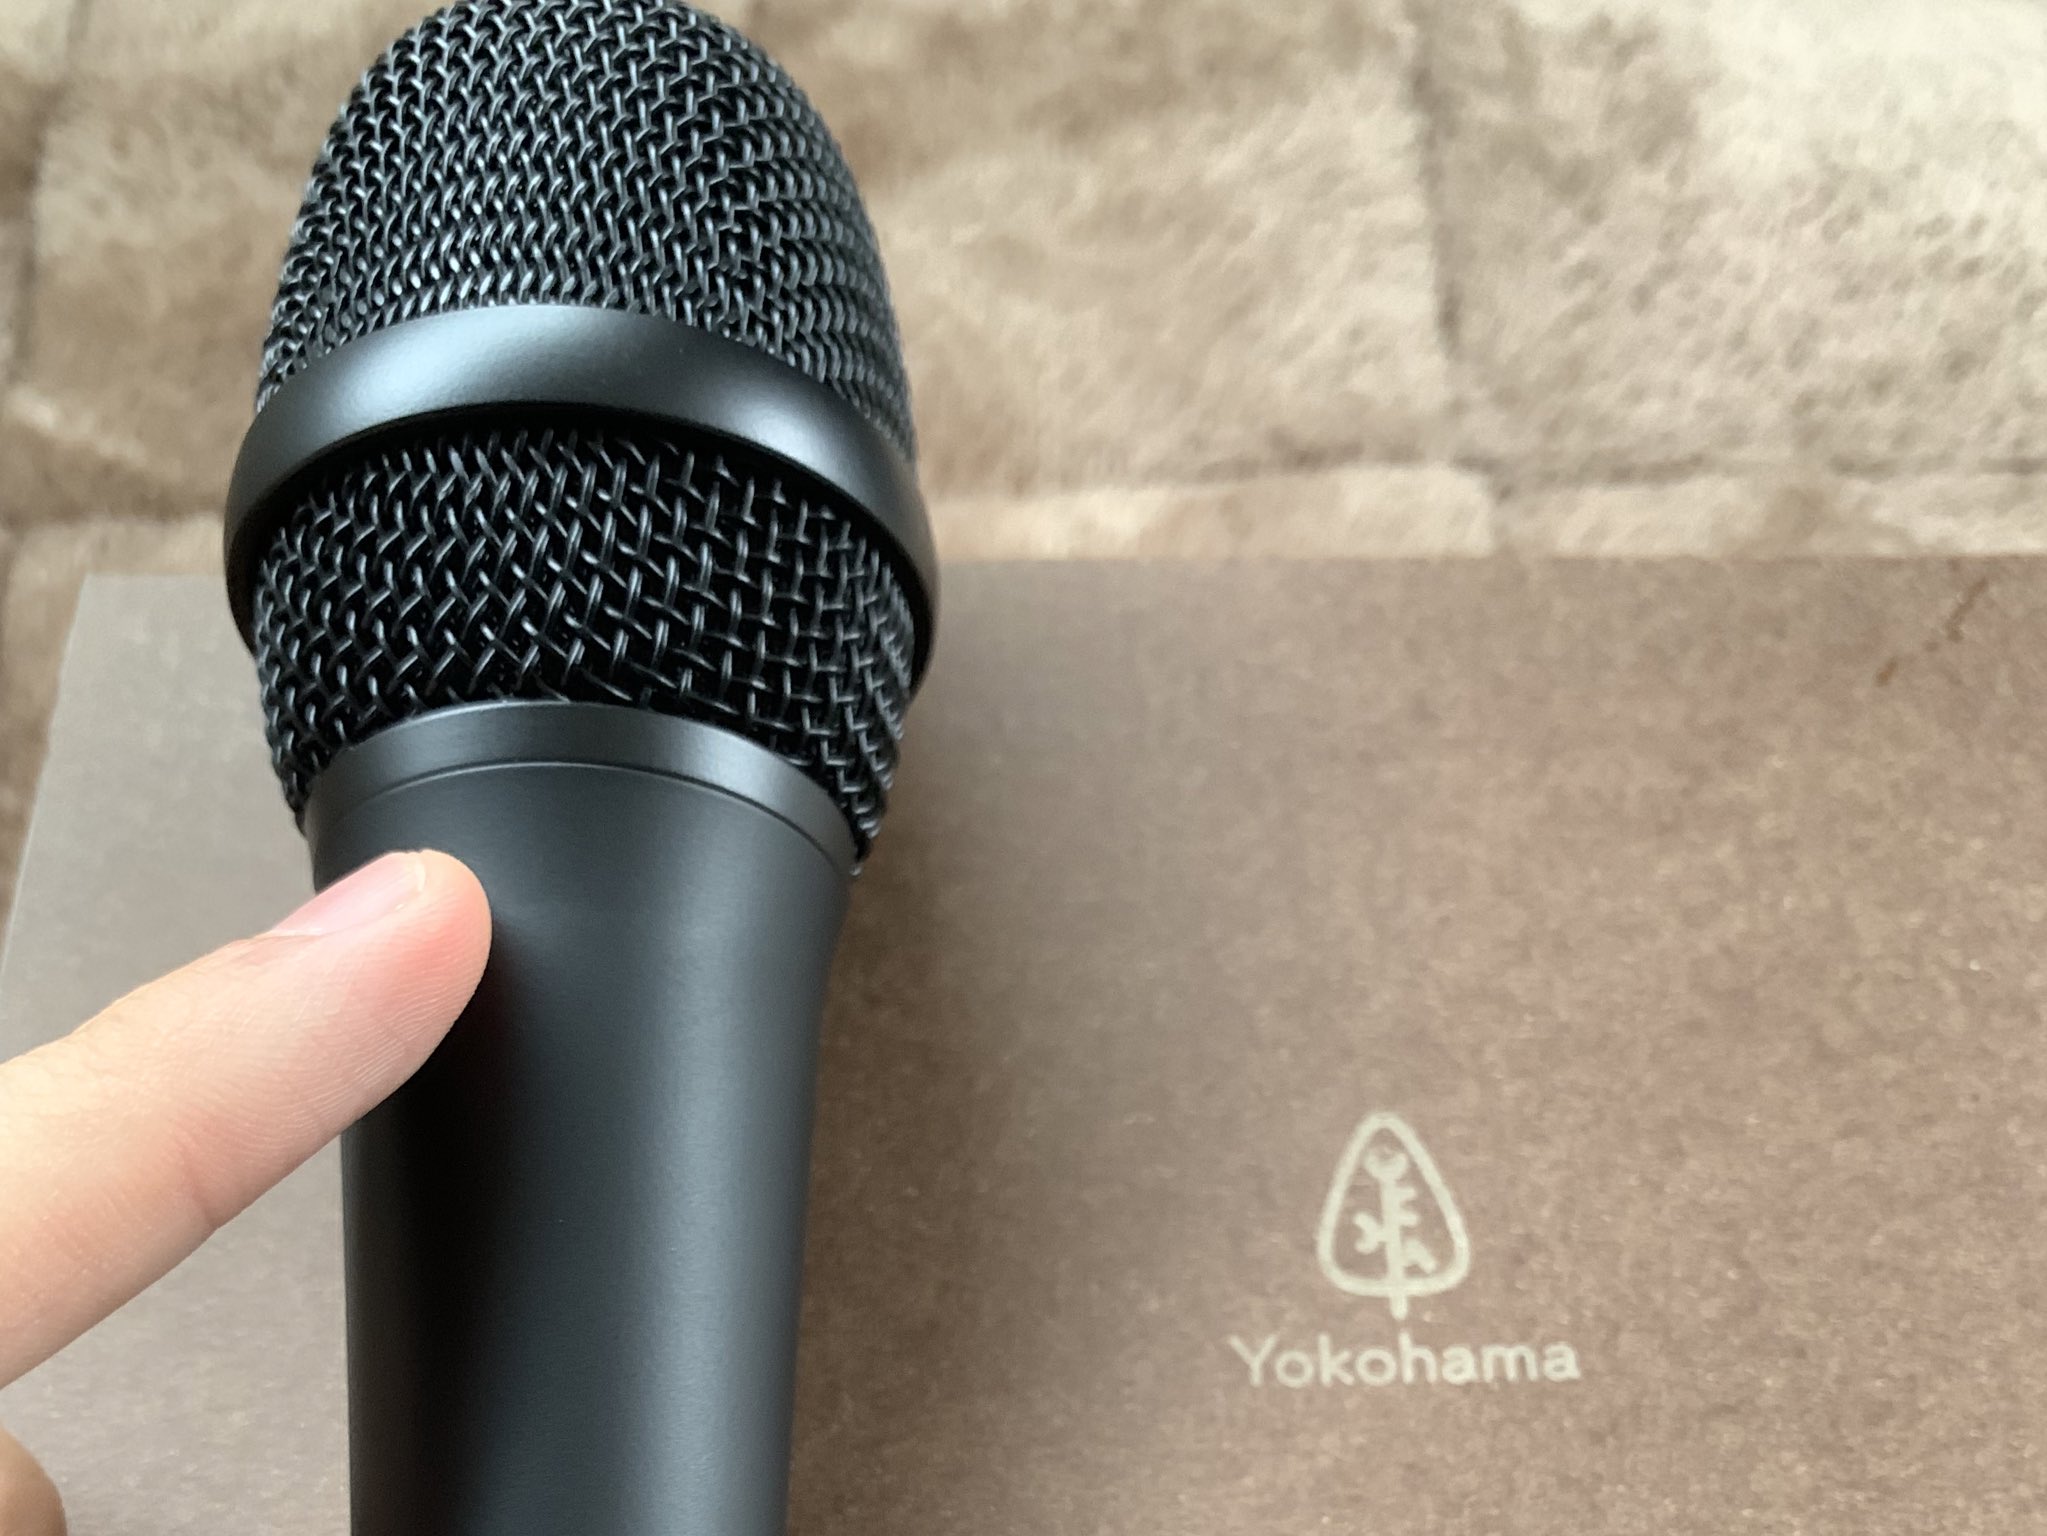 23700円激安販売品 海外 で 買う Yokohama microhone / SAKURA 未使用